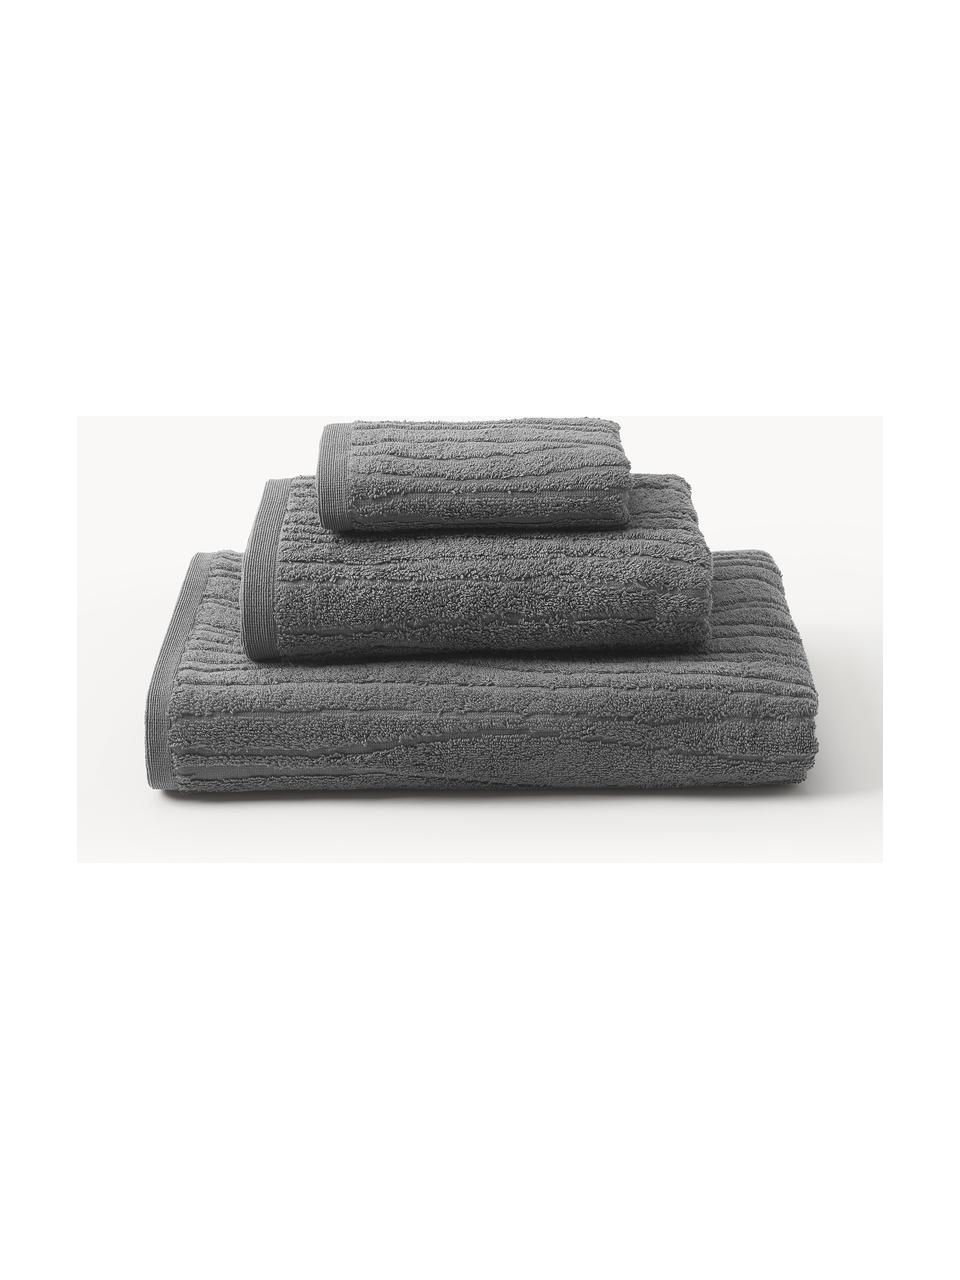 Sada ručníků z bavlny Audrina, různé velikosti sady, Tmavě šedá, Sada s různými velikostmi